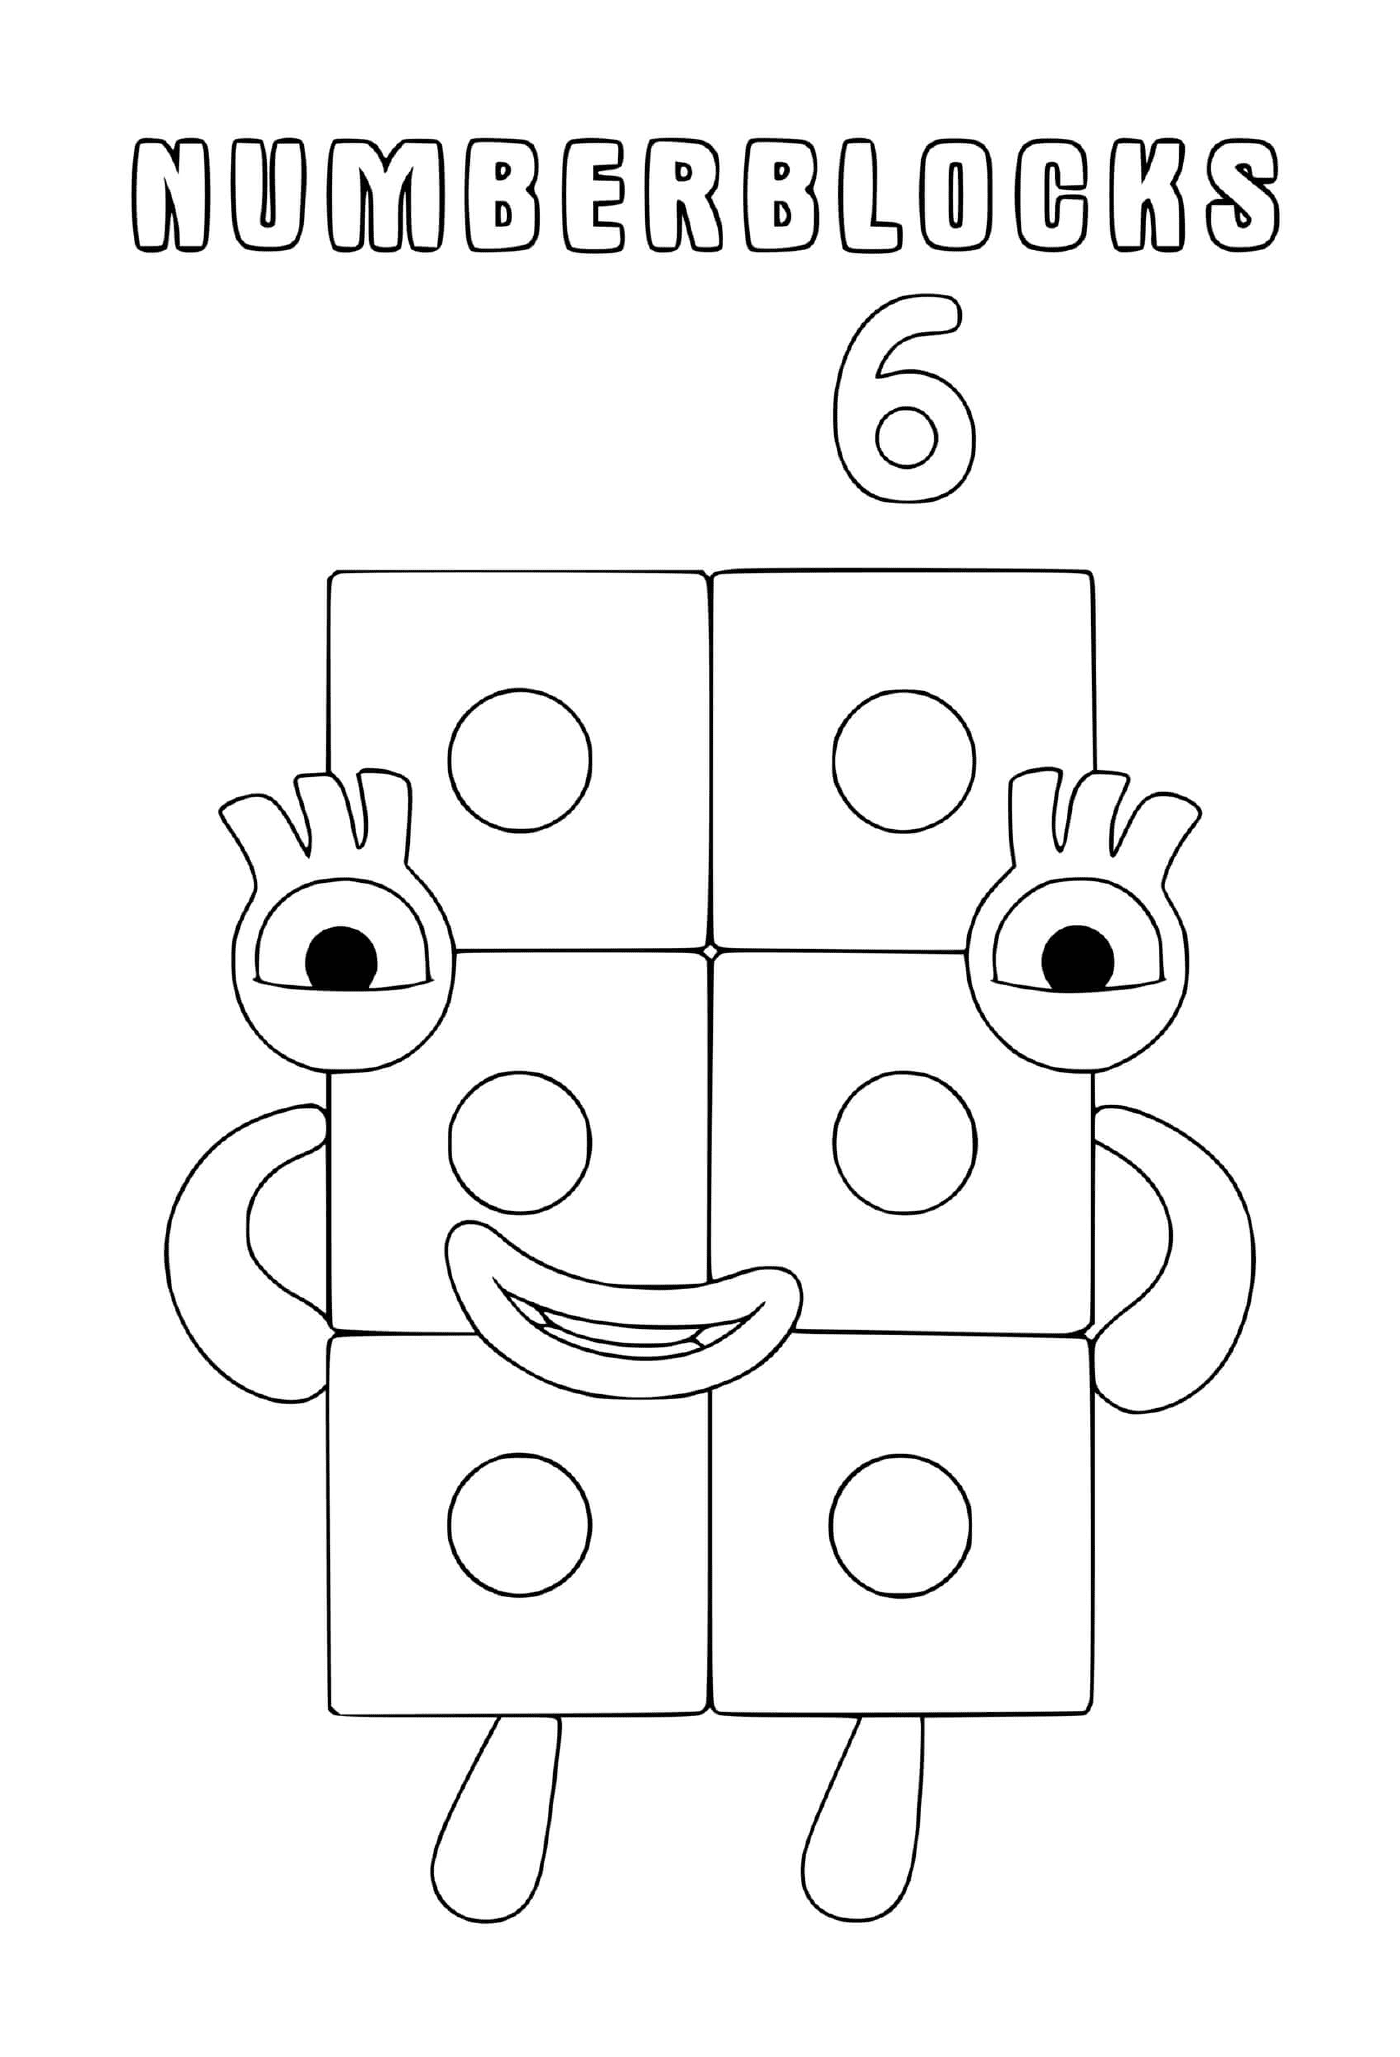  Numberblocks Nummer 6, ein Block mit Augen 